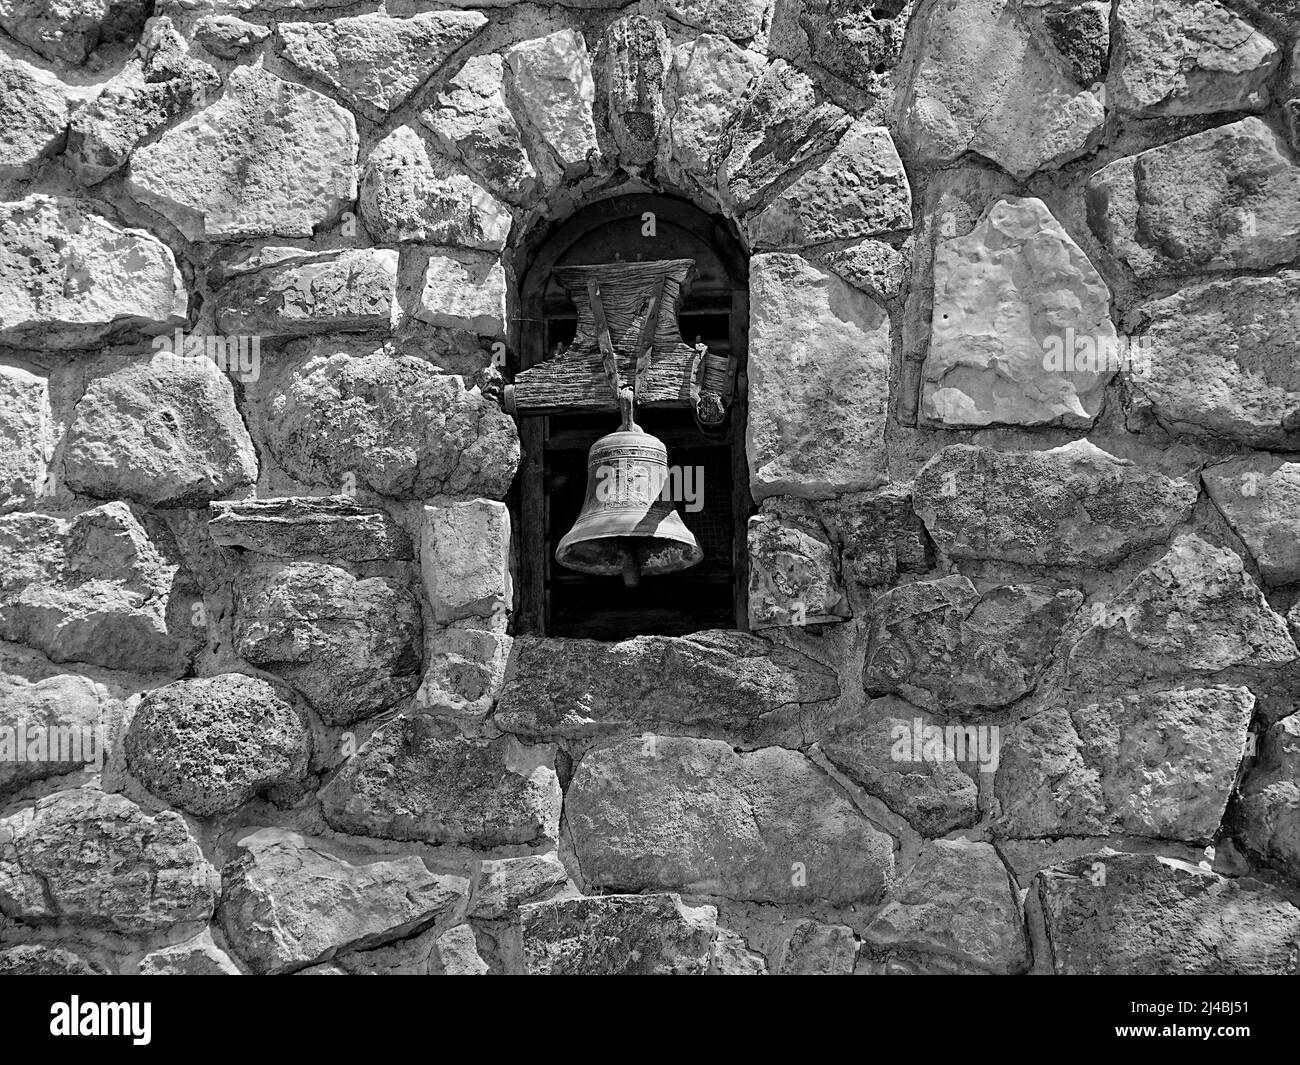 Una campana de estilo misión y el trabajo de piedra que la rodea hacen una interesante fotografía en blanco y negro Foto de stock